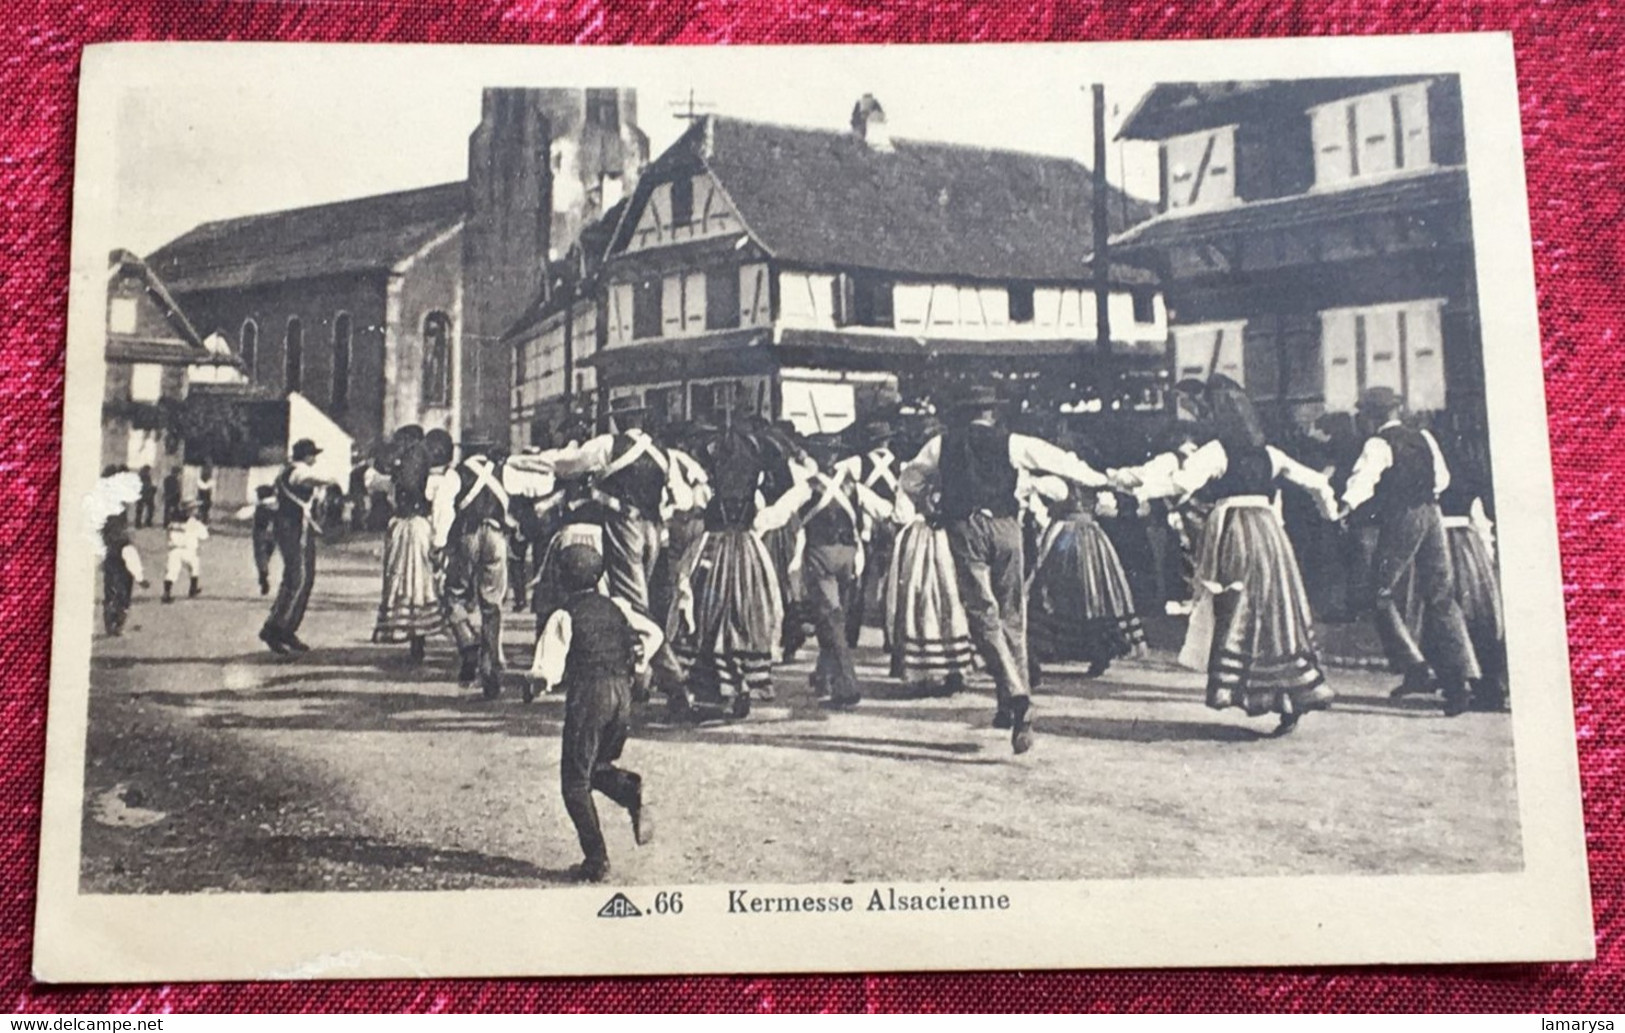 Mietesheim Kermesse Alsacienne -☛Carte Postale CPA-☛C-peu Courante-WW2 1940-Alsace [57] Moselle Région Grand Est. - Altri Comuni